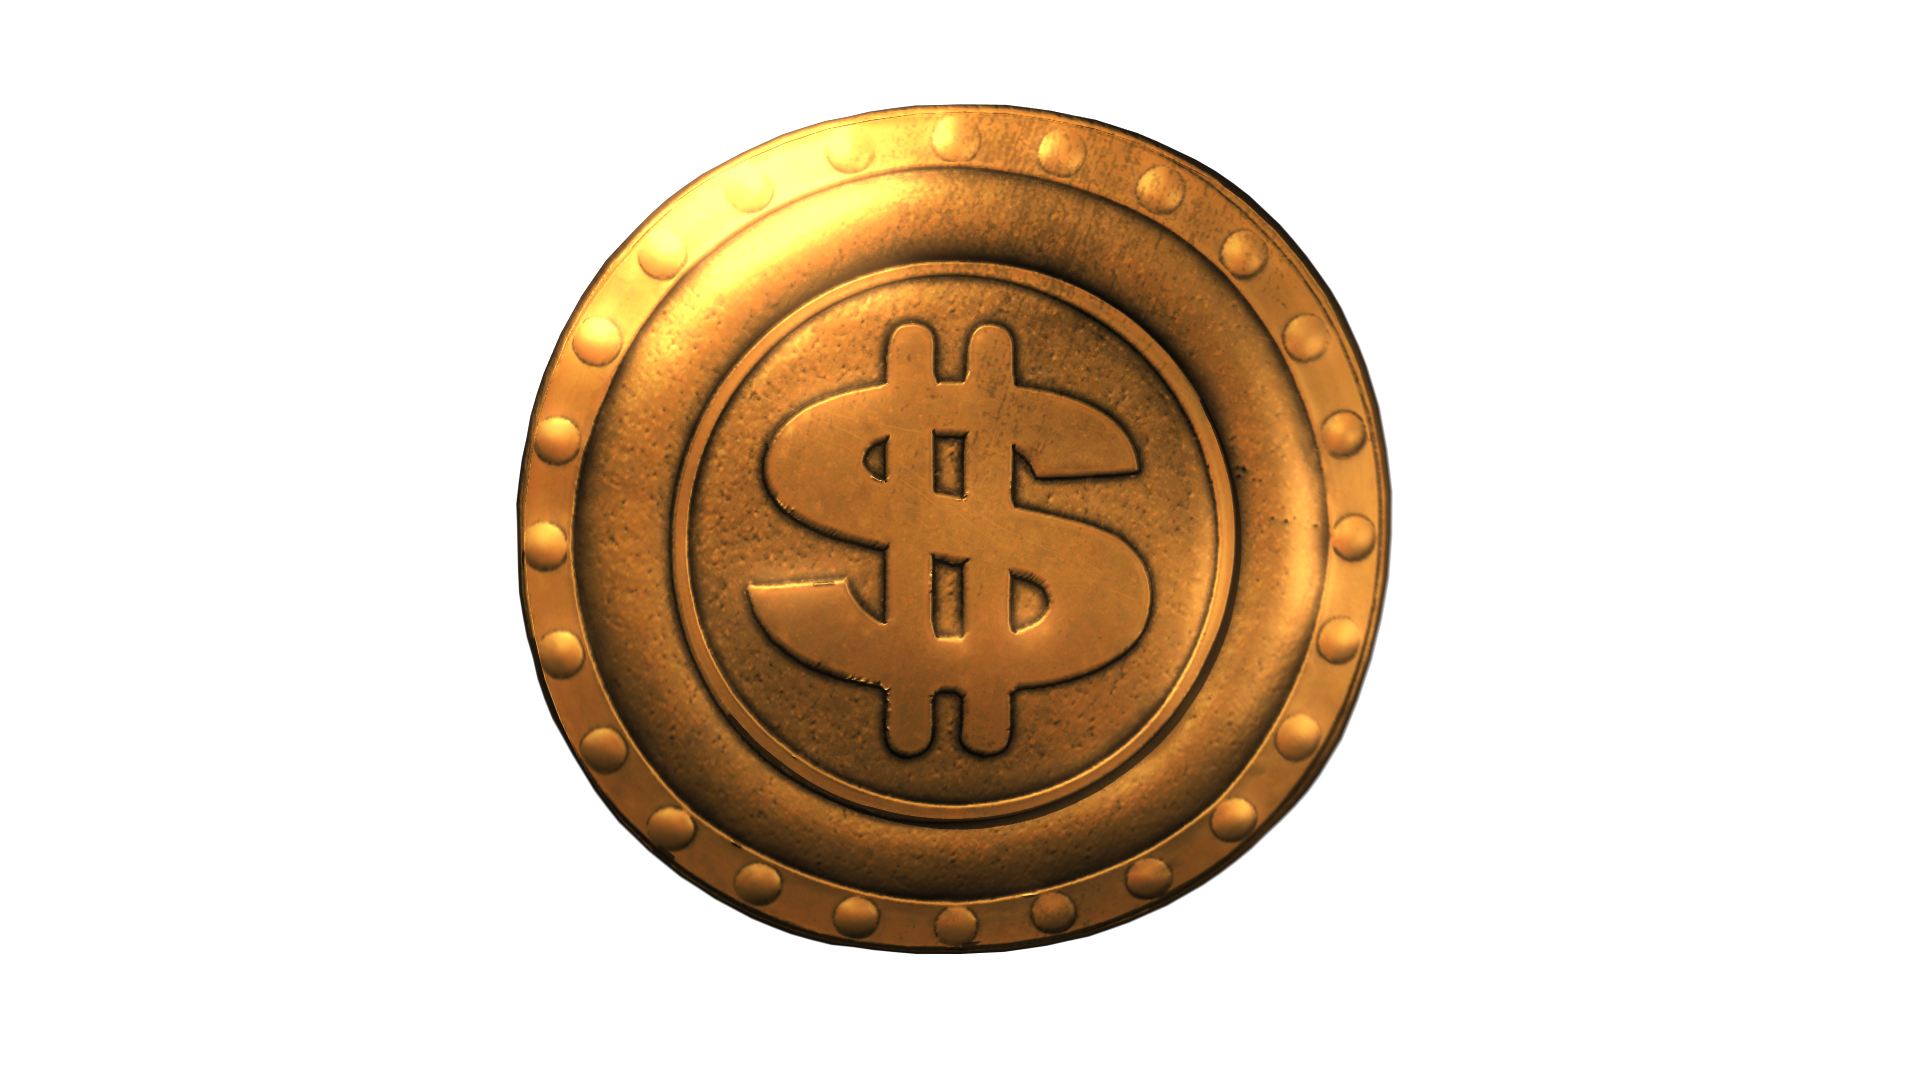 Spinning coin. Gold Coin Effect. Spinning Gold. БРАВЛ монеты эффект.